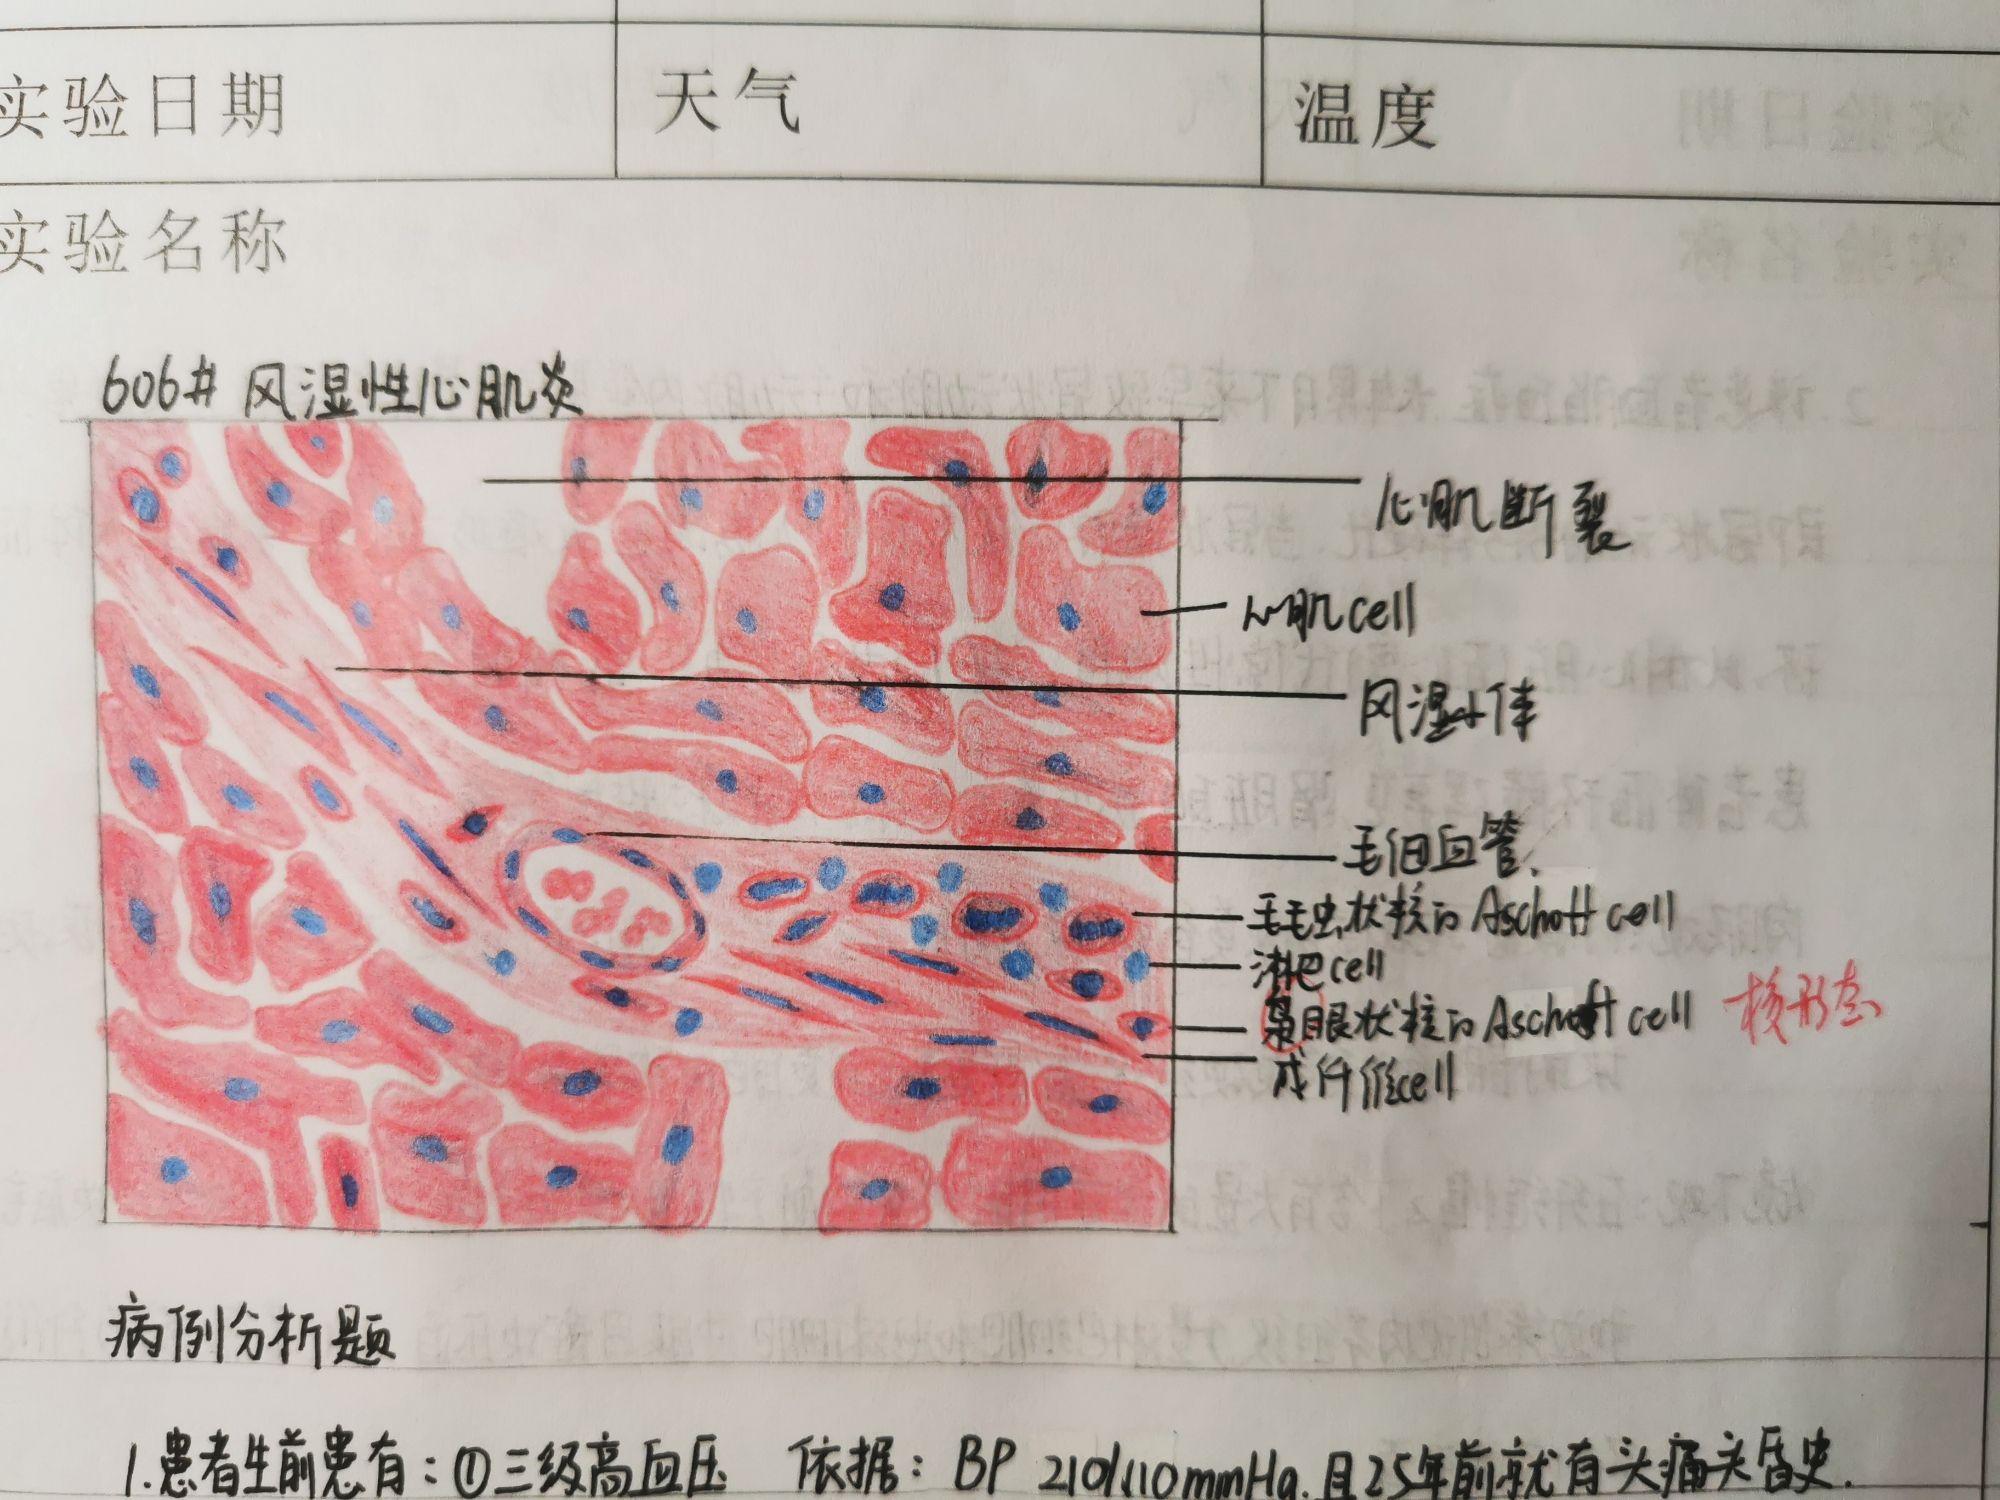 心肌细胞手绘图图片